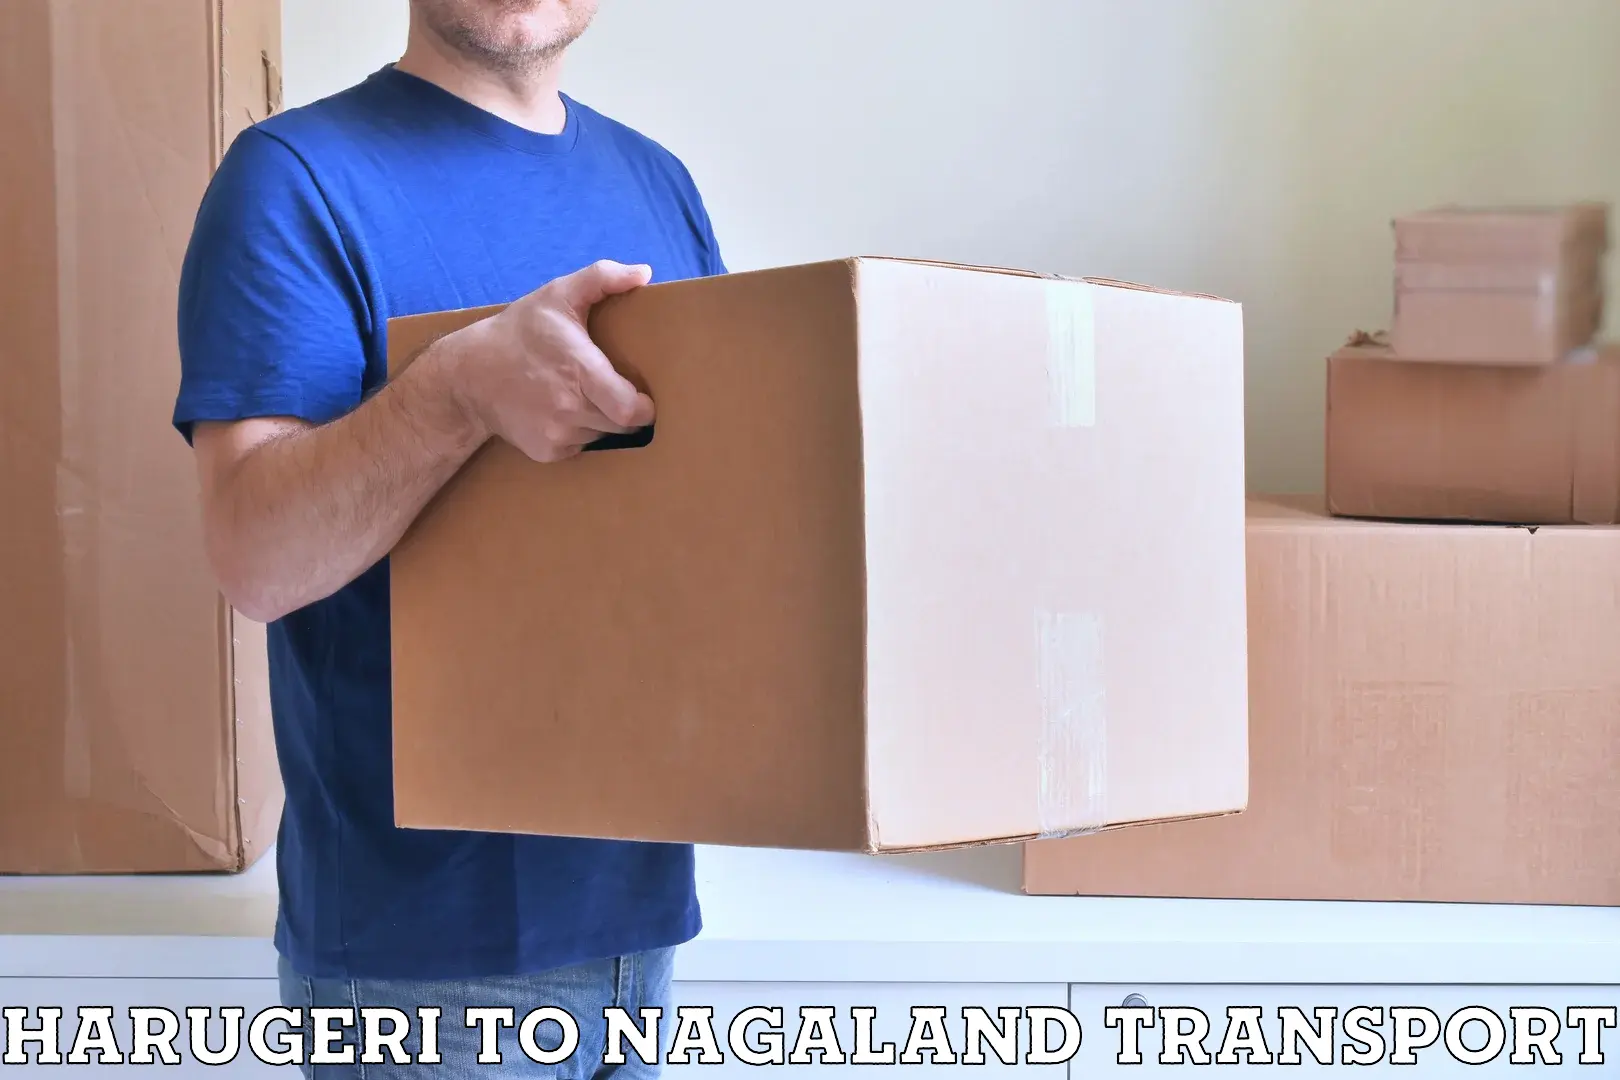 Online transport service Harugeri to Nagaland